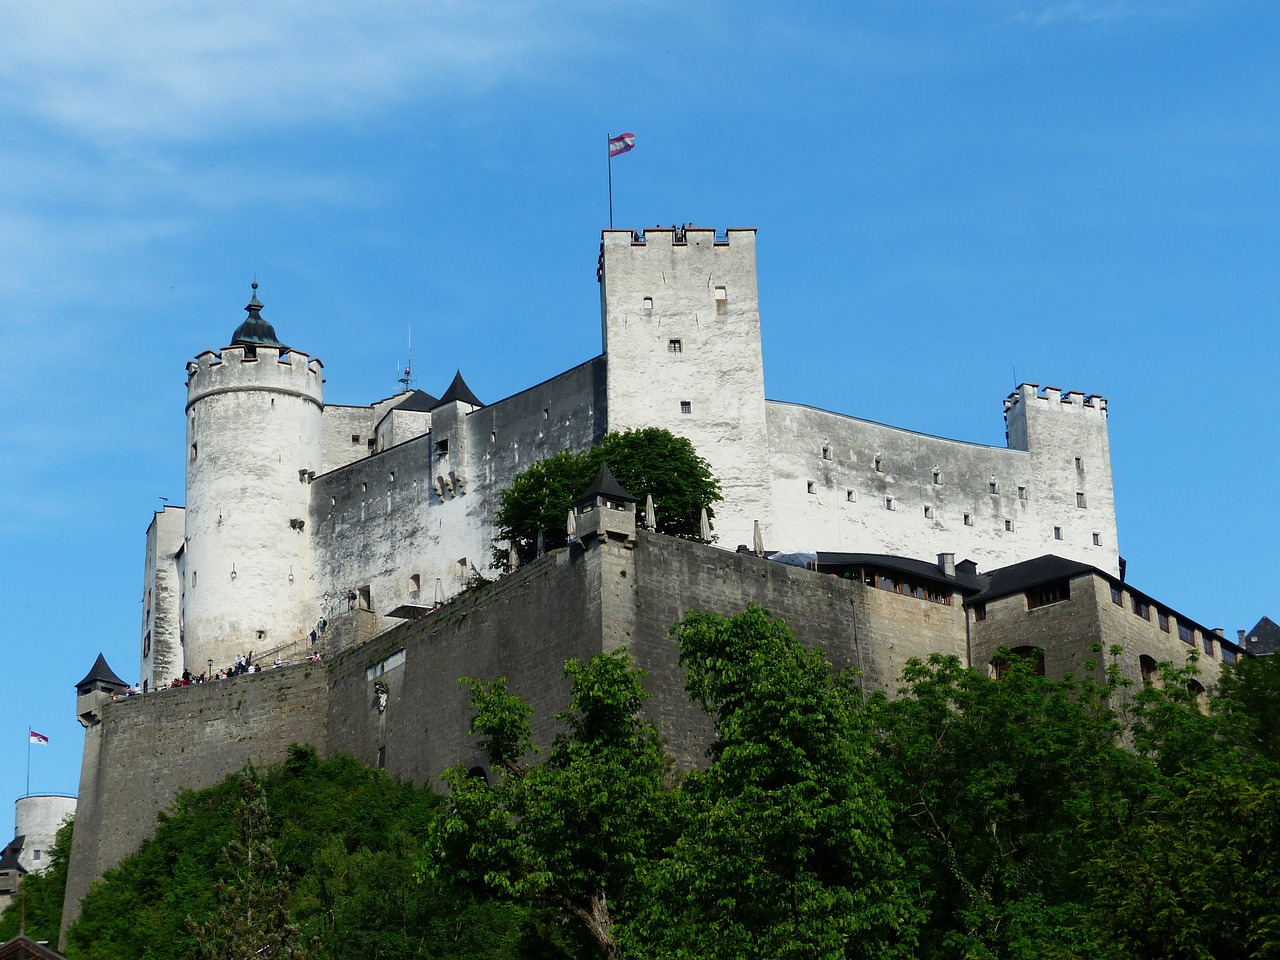 Średniowieczne zamki w Polsce – opisz zamek Rydzyna, galeria